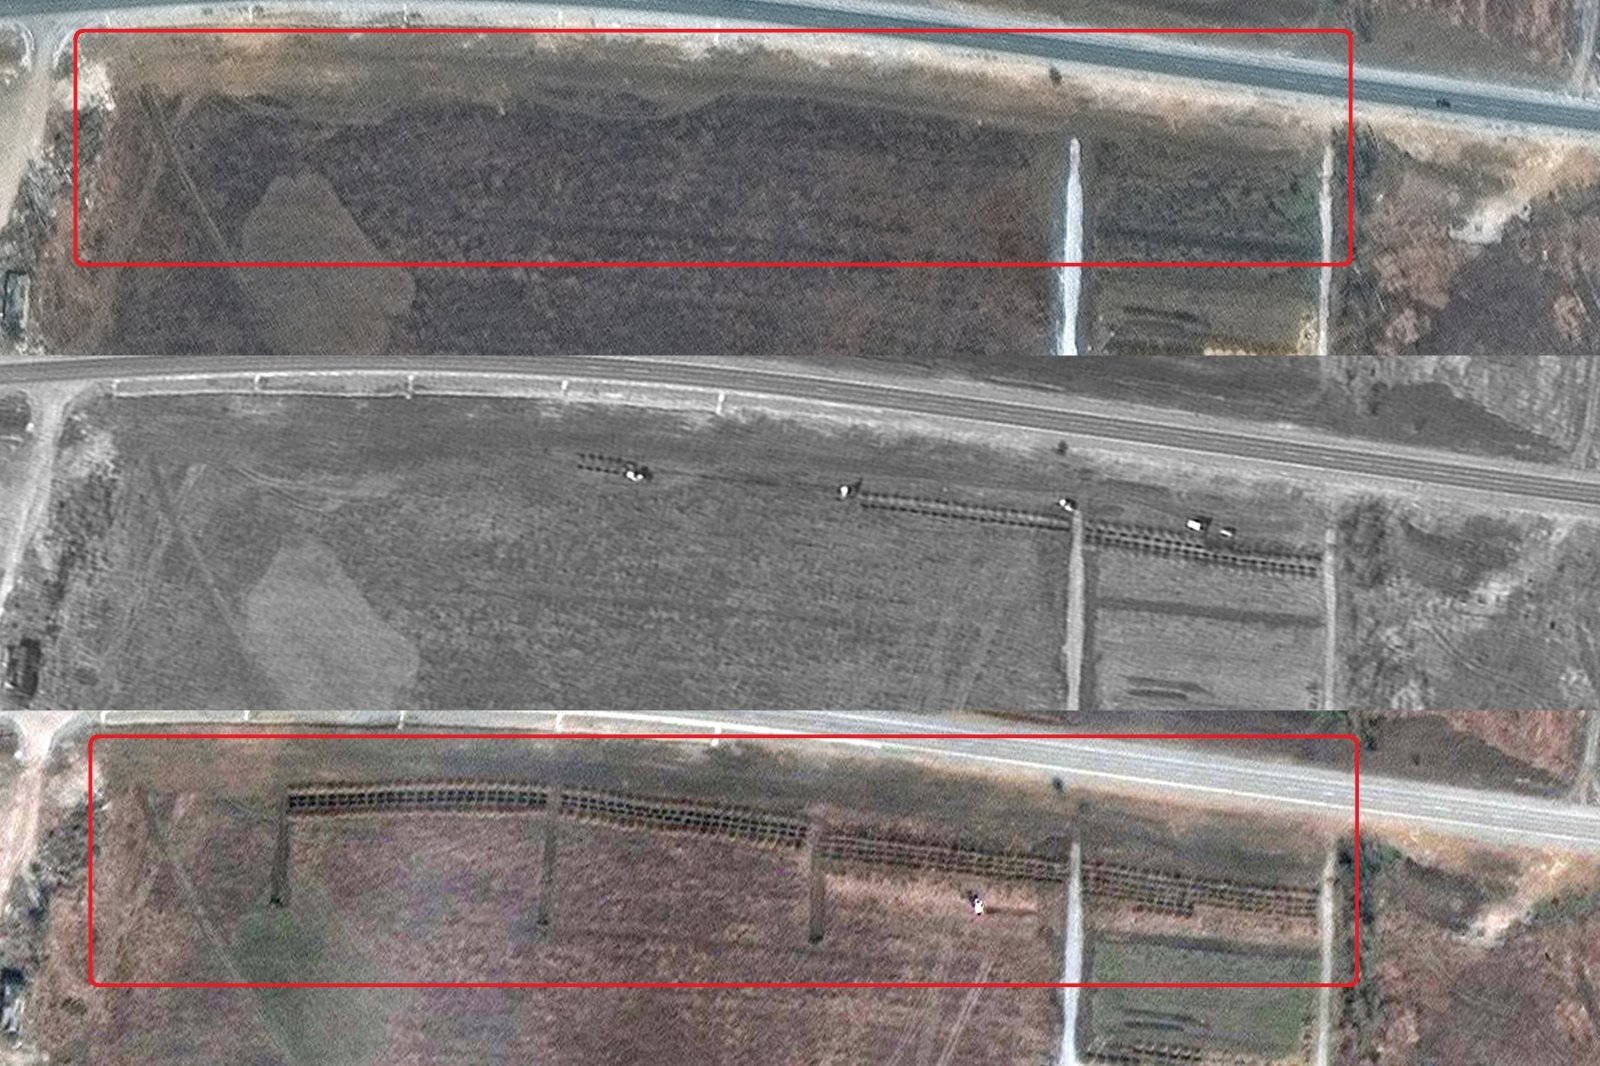 En romsatellitt som fløy over Ukraina oppdaget en massegrav – tre fotballbaner lang